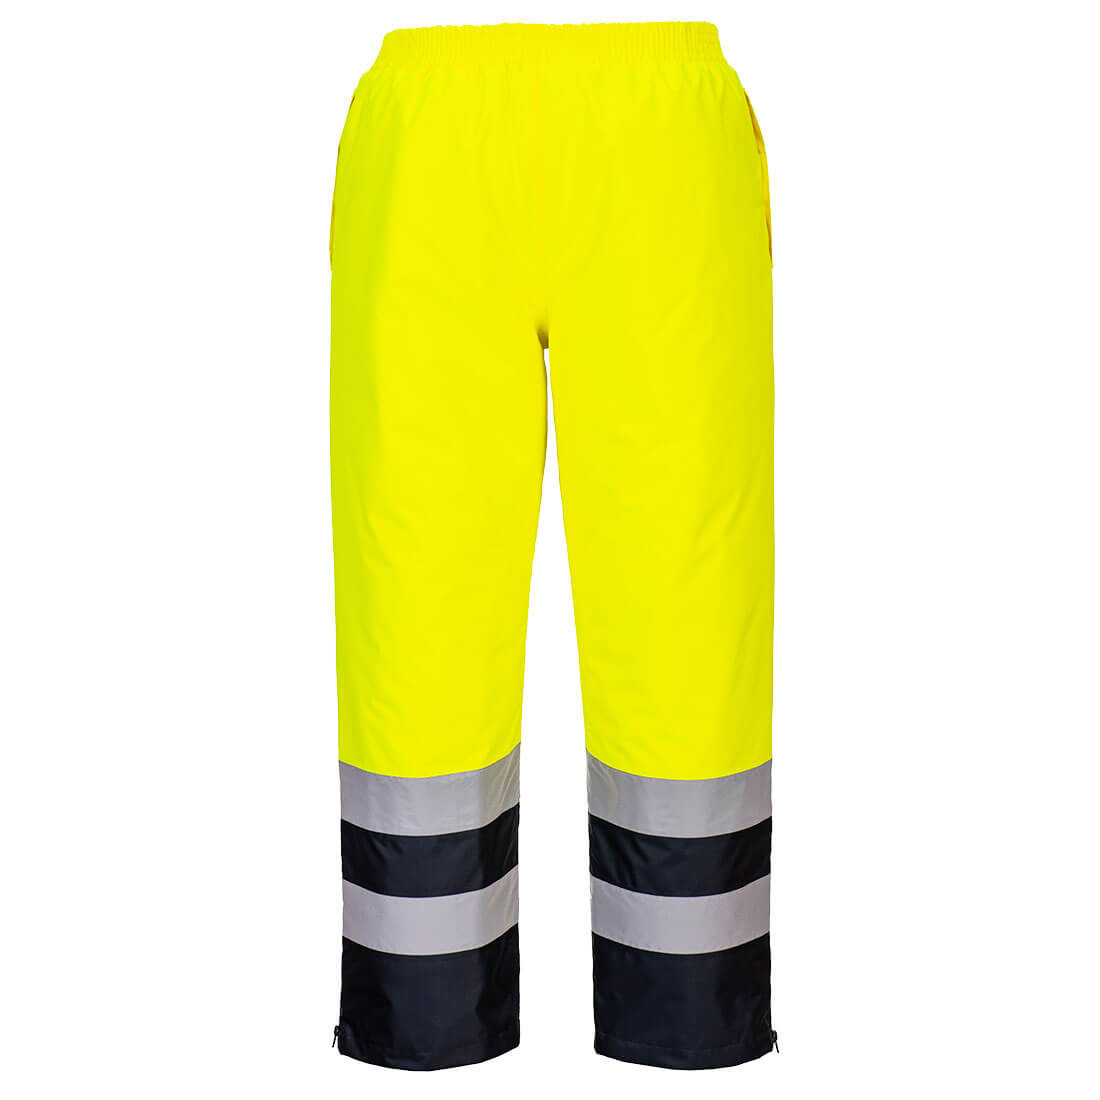 Pantaloni invernali ad alta visibilità - Abbigliamento di protezione